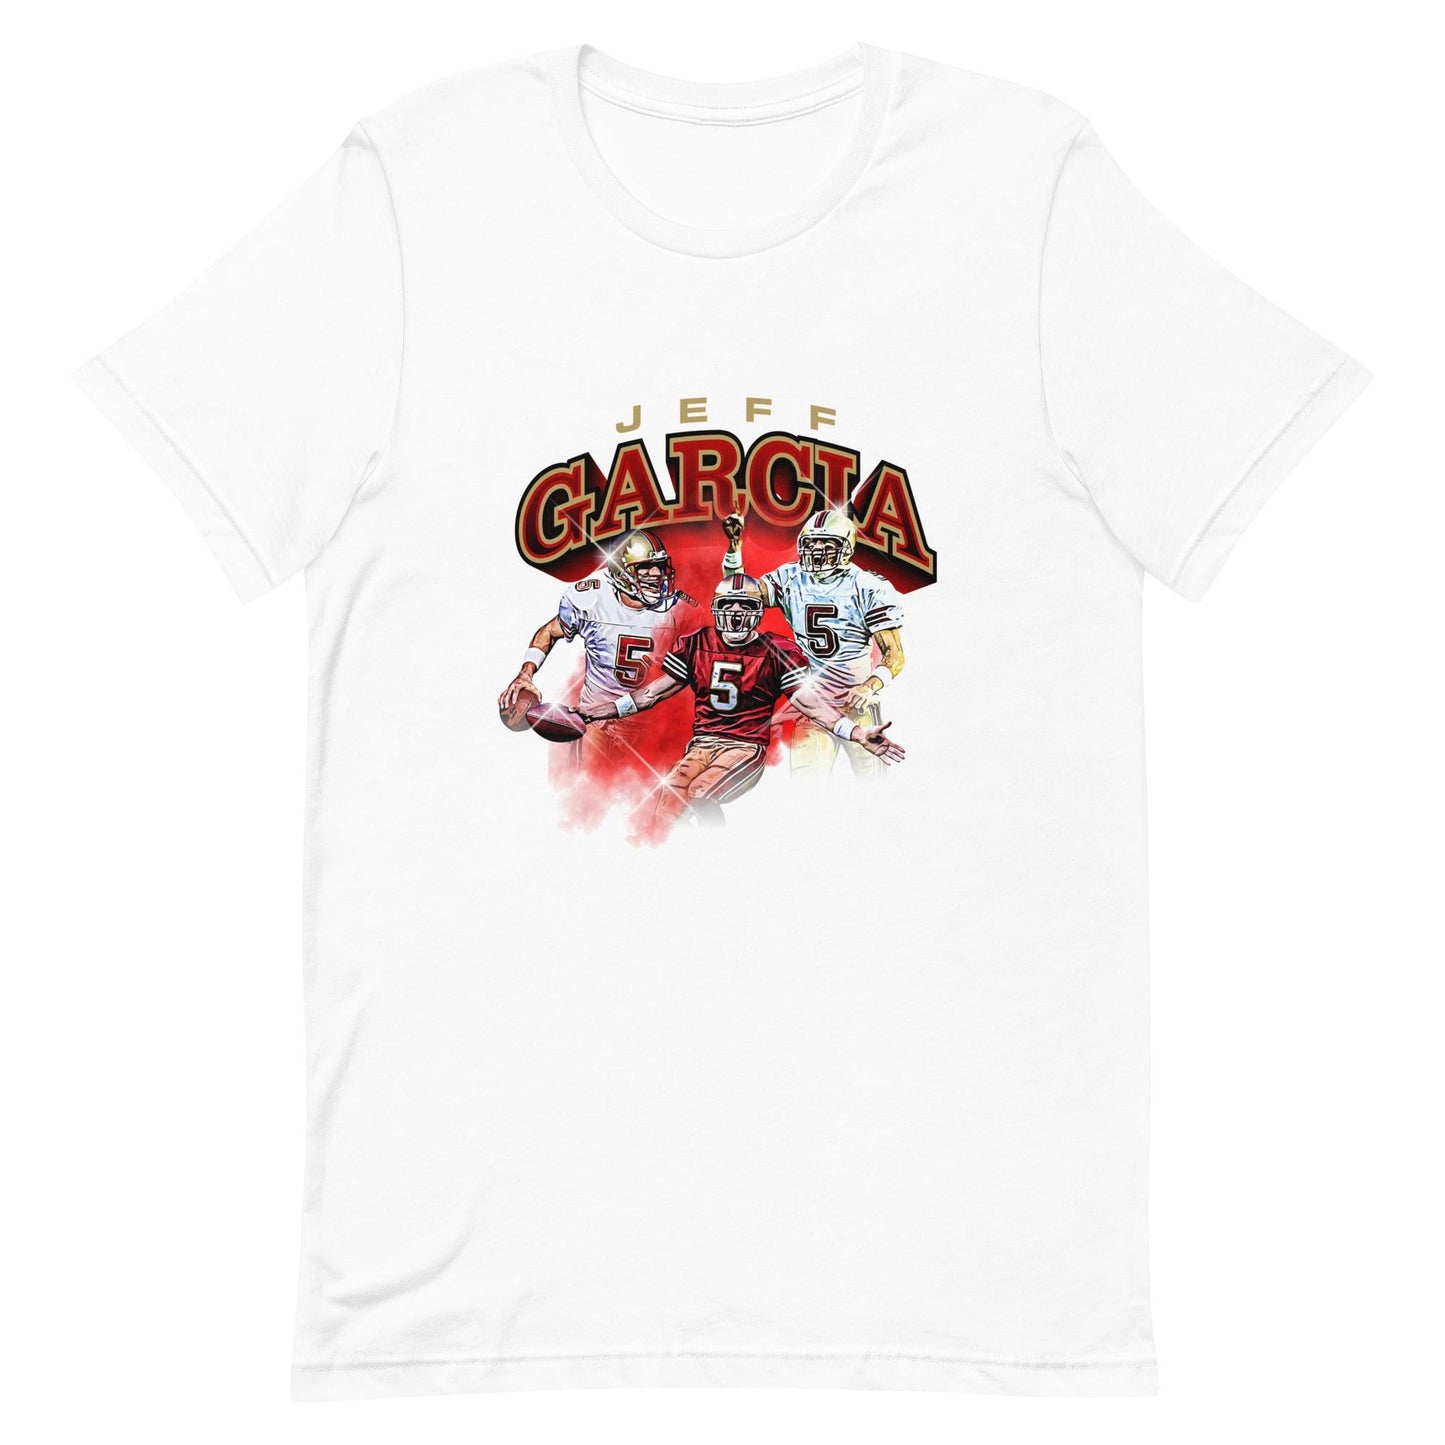 Jeff Garcia "Essential" t-shirt - Fan Arch